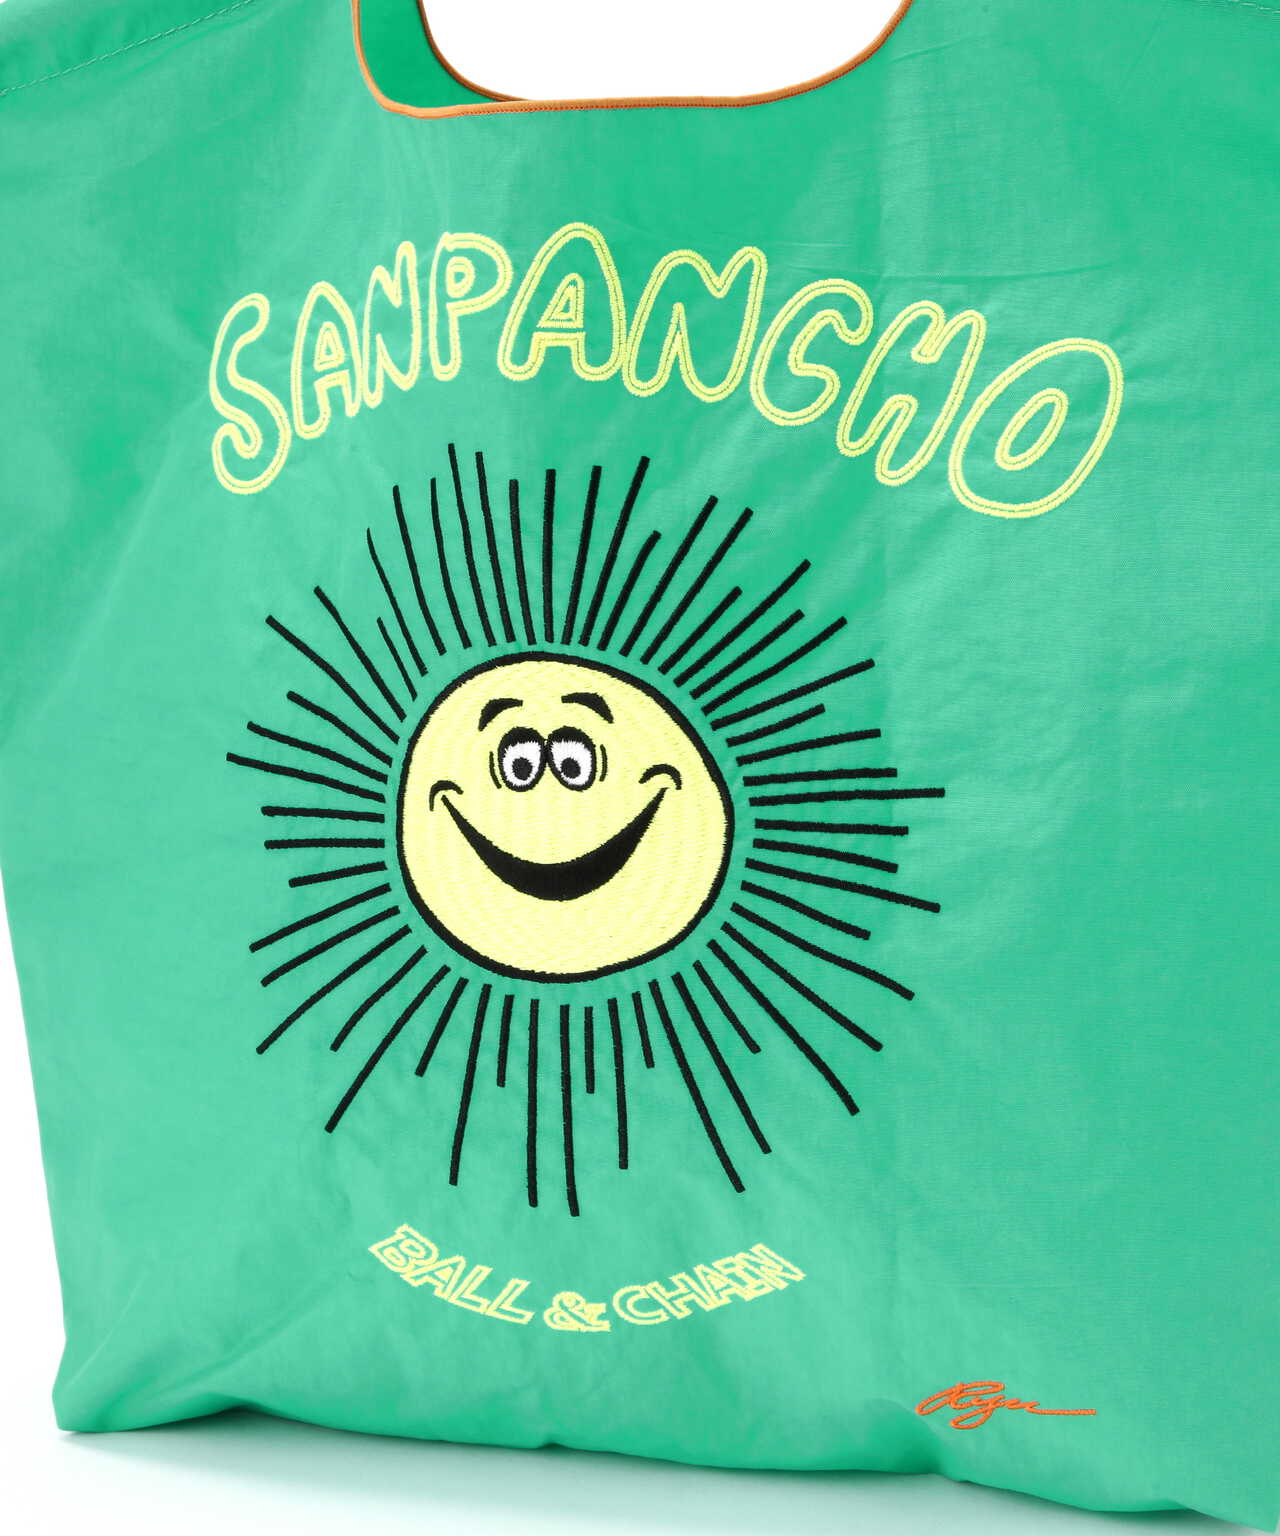 Ball&Chain(ボールアンドチェーン) RYU.SANPANCHO/Mサイズ 刺繍ショッピングバッグ